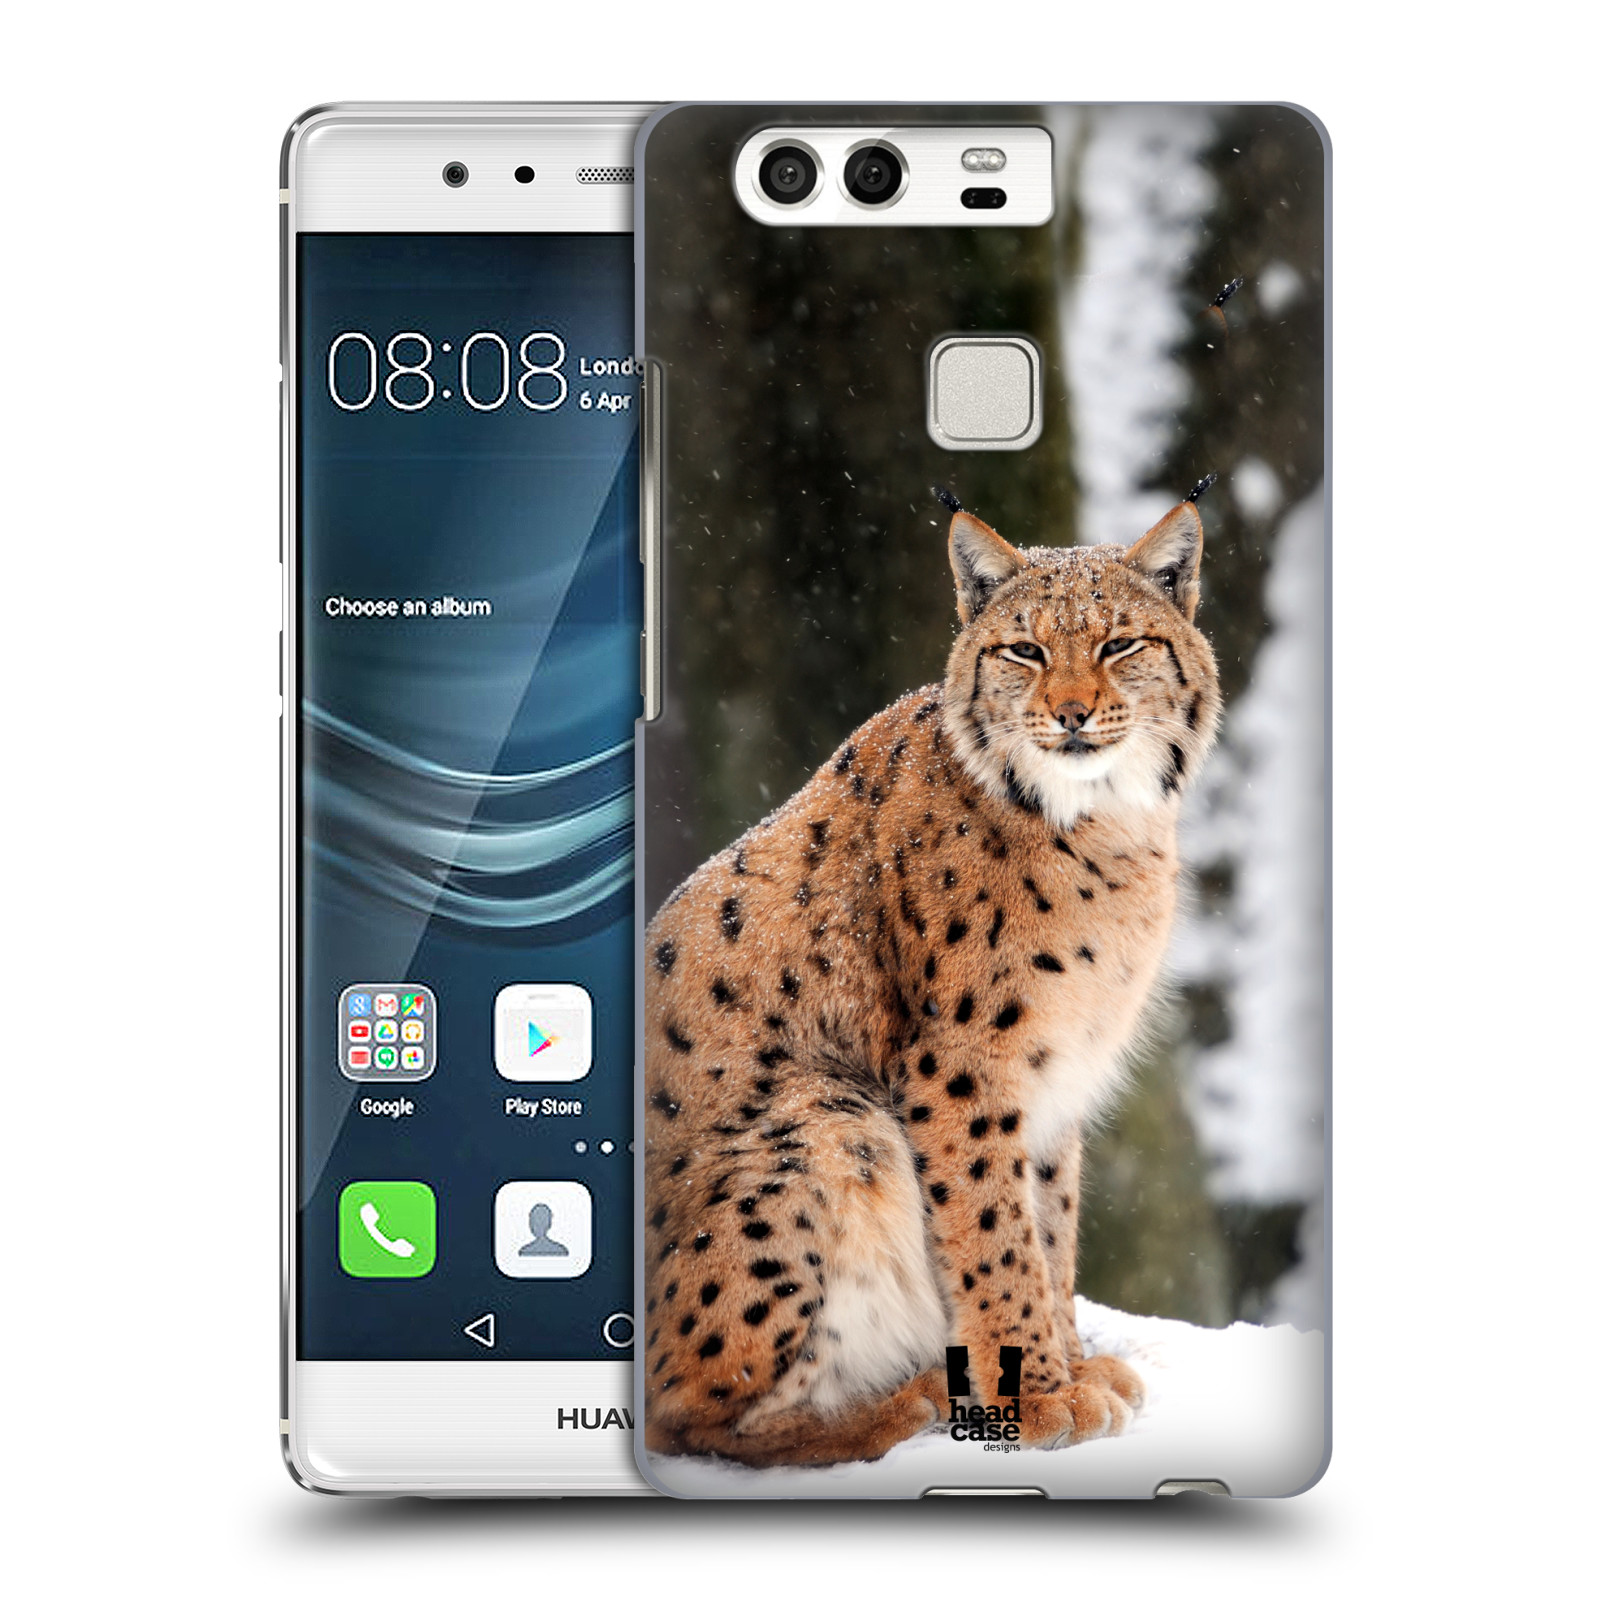 HEAD CASE plastový obal na mobil Huawei P9 / P9 DUAL SIM vzor slavná zvířata foto rys